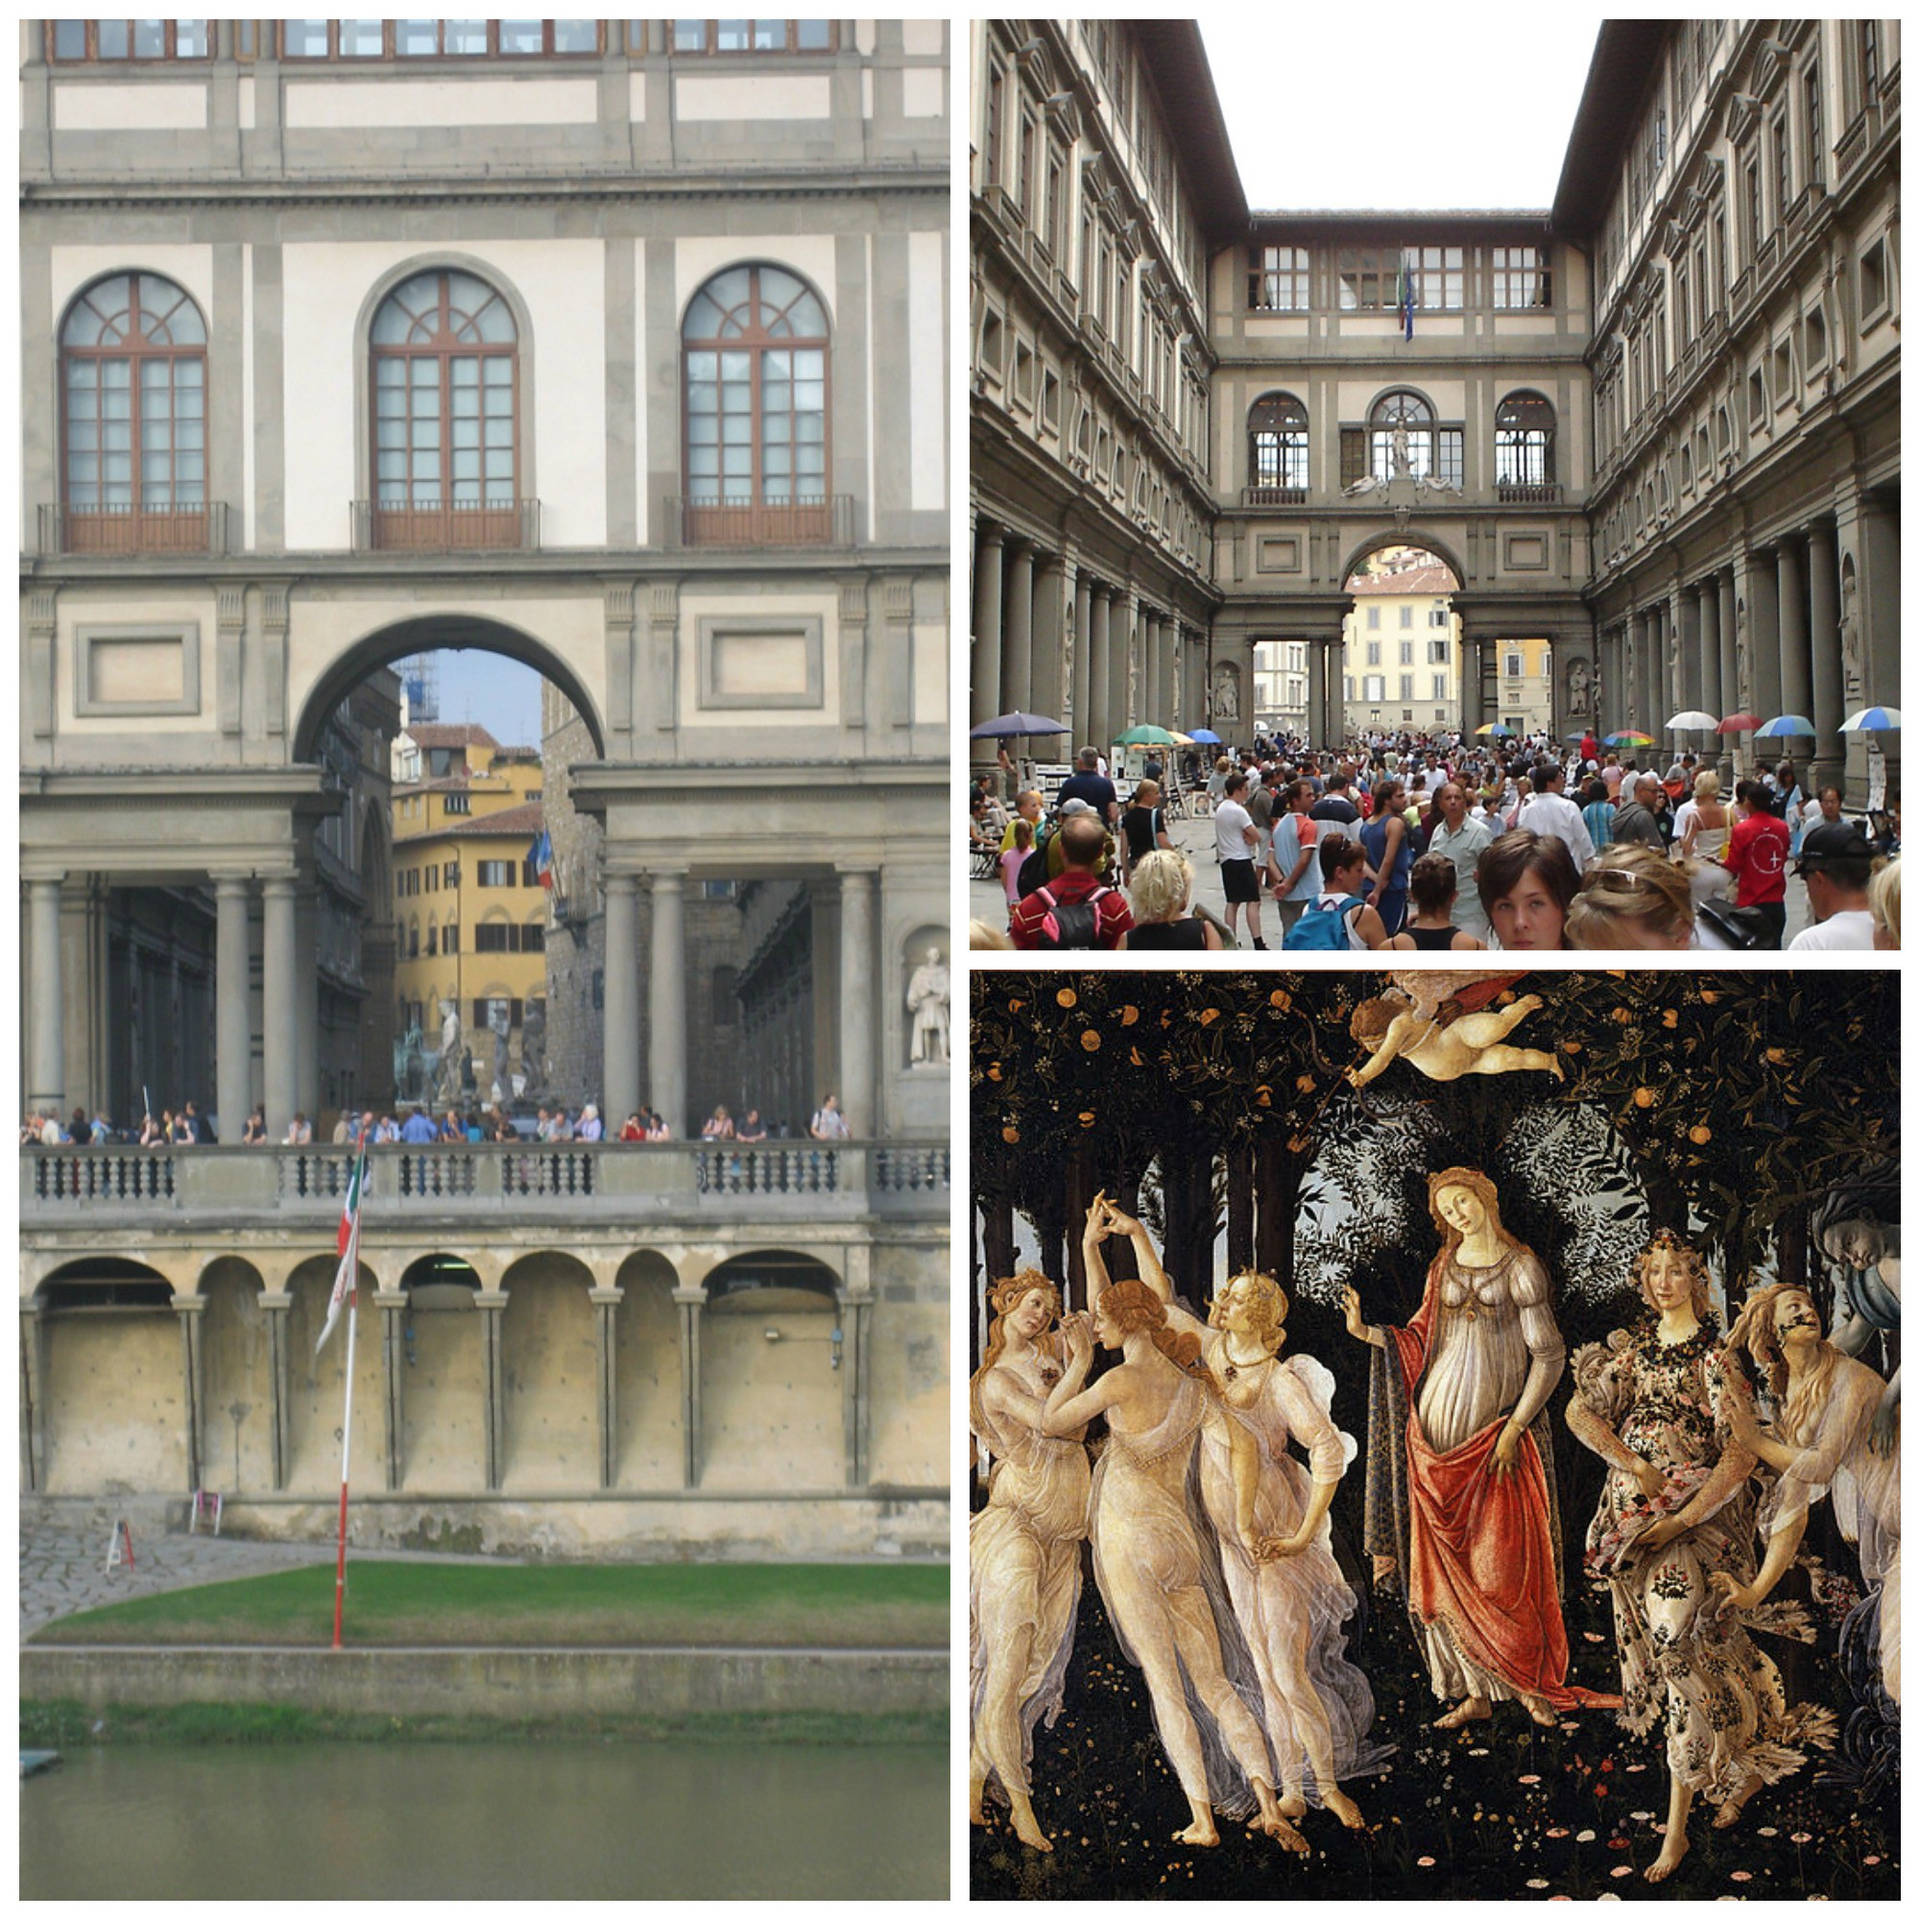 Uffizi Gallery Photo Collage Wallpaper